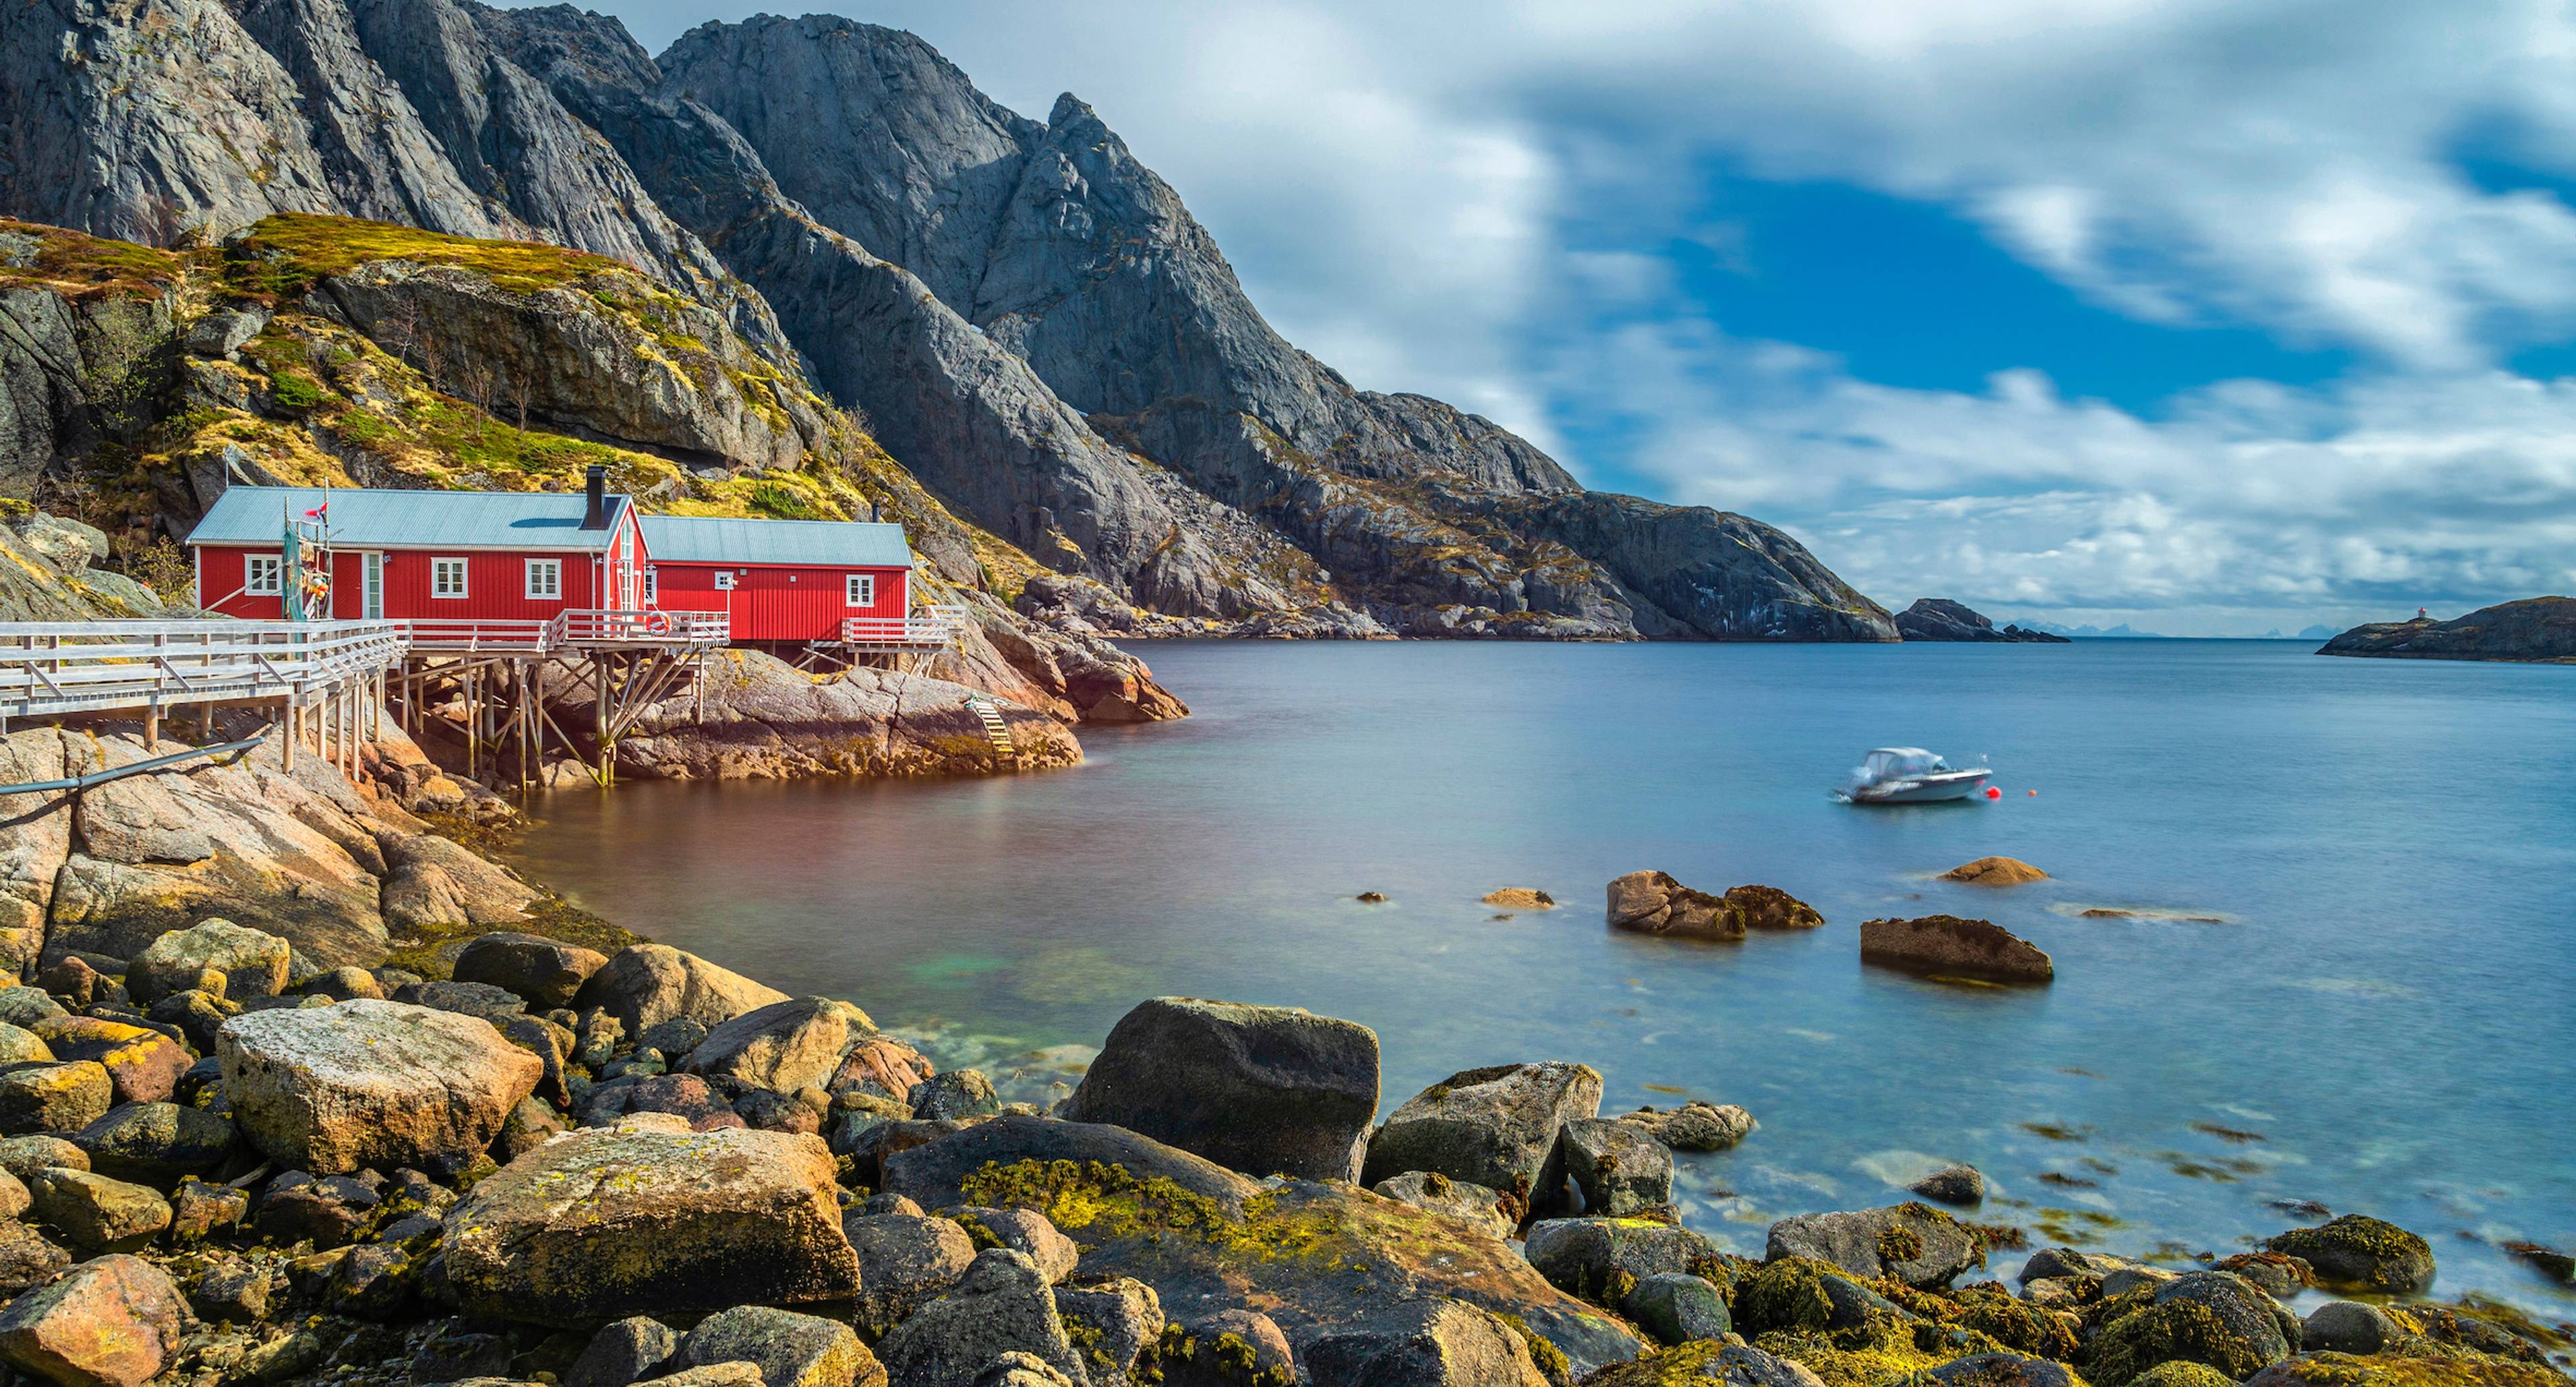 Les villages de pêcheurs de carte postale de Reine, Nusfjord et Hamnøy